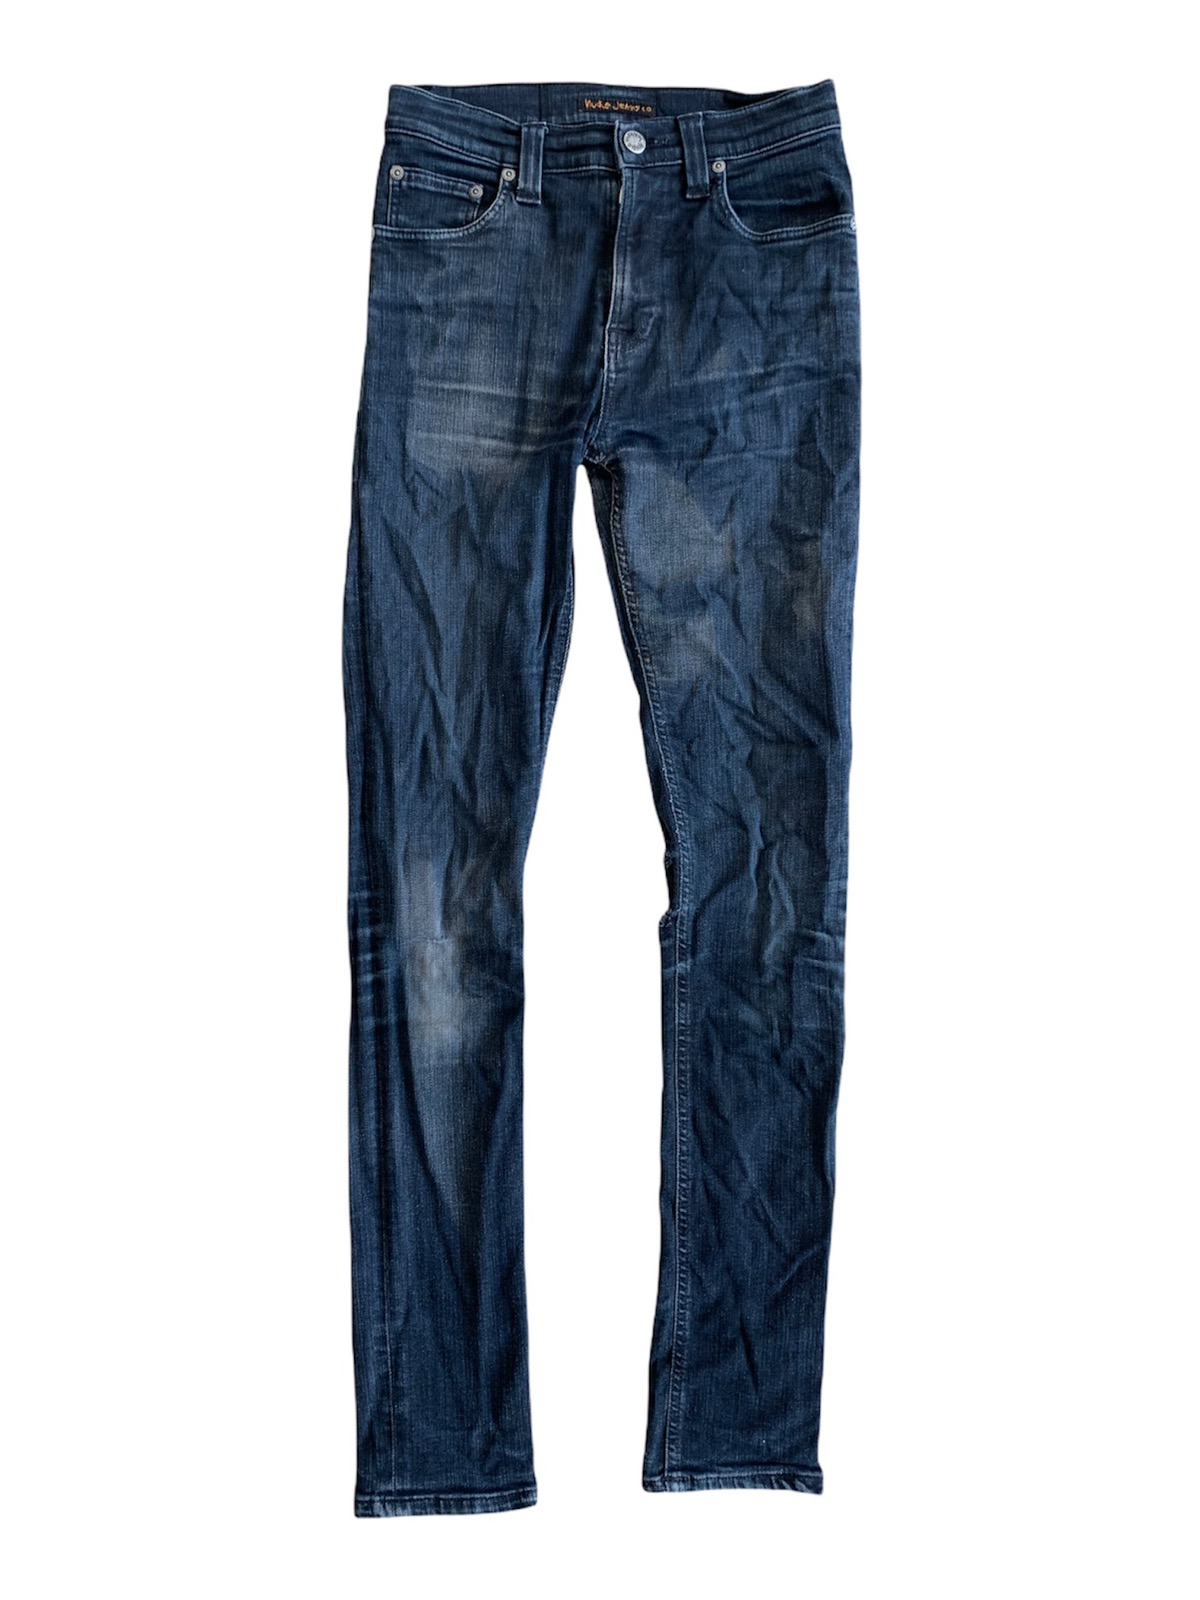 Nudie Jeans Distressed Slim-Fits Denim Pant - 1